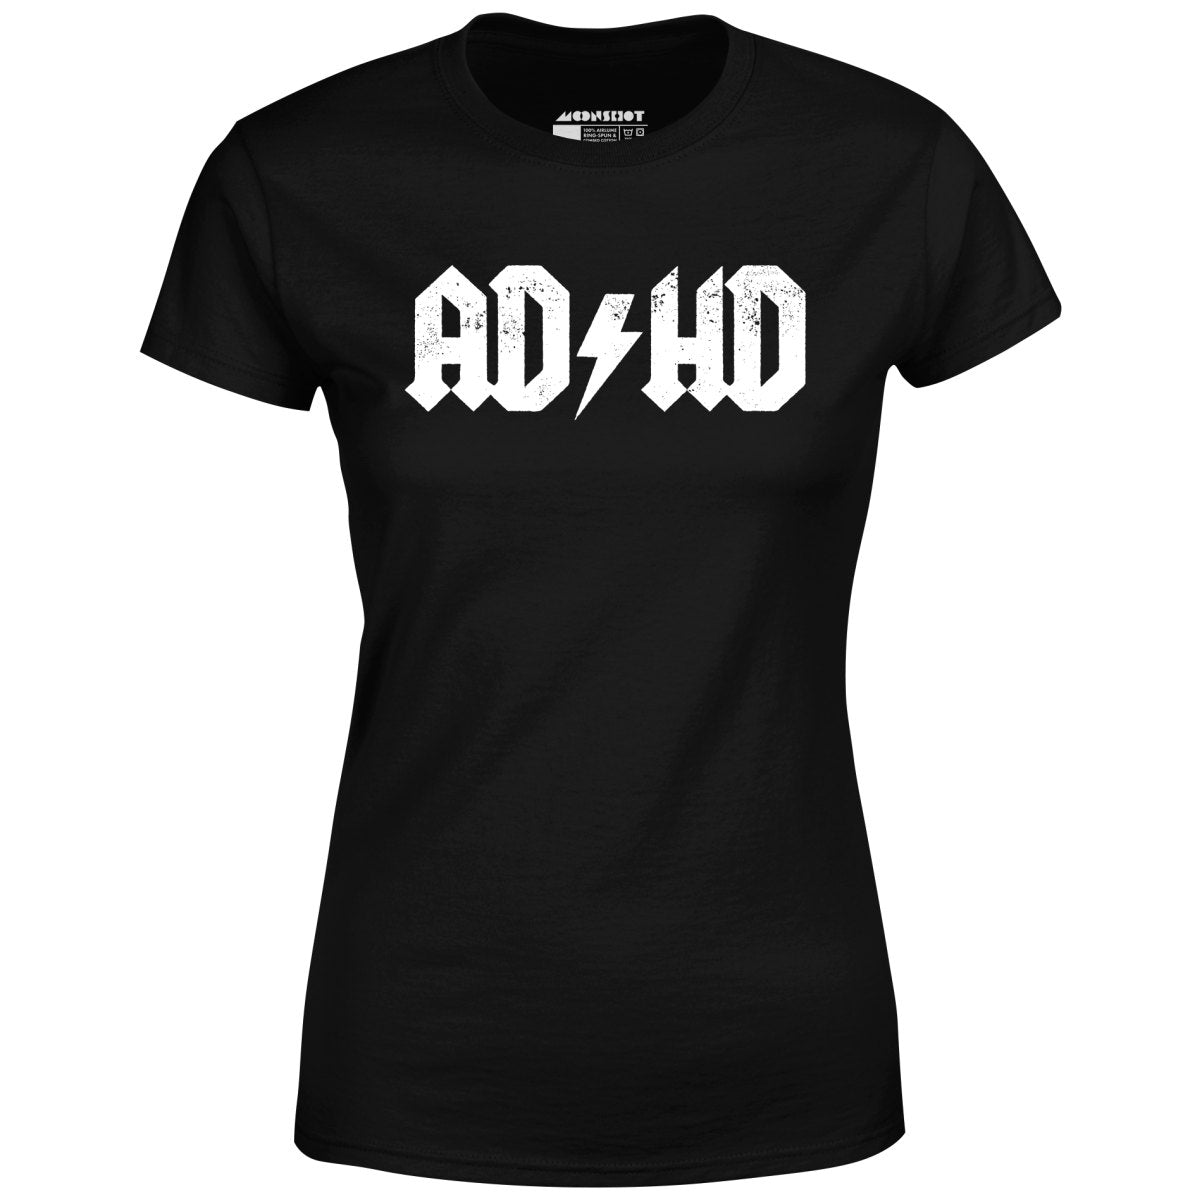 ADHD - Women's T-Shirt